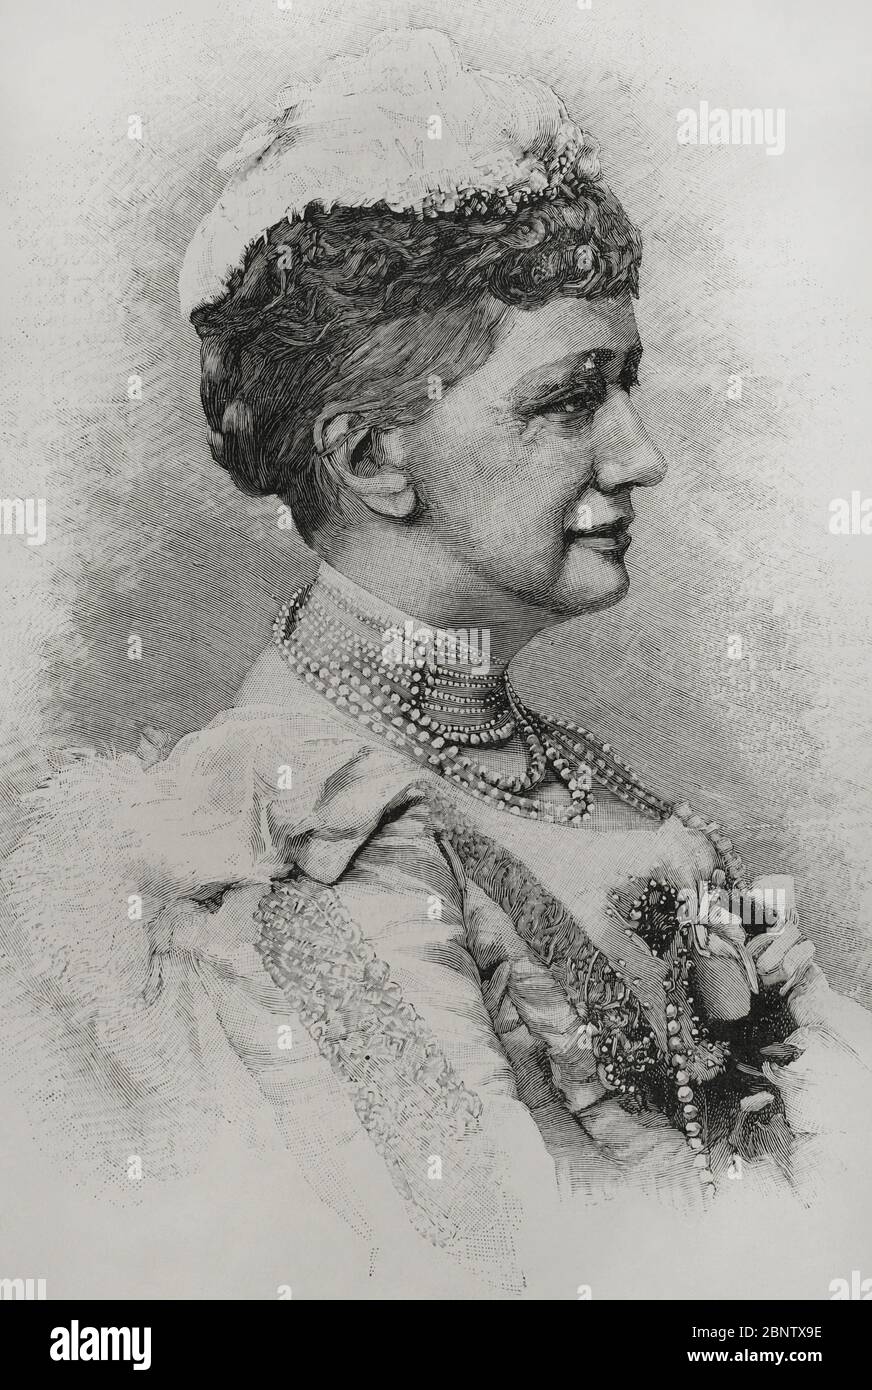 Luisa de Hesse-Kassel (1817-1898). Reina consorte de Dinamarca como esposa de Cristian IX de Dinamarca. Retrato. Grabado. La Ilustración Española y Americana,15 de octubre de 1898. Stock Photo